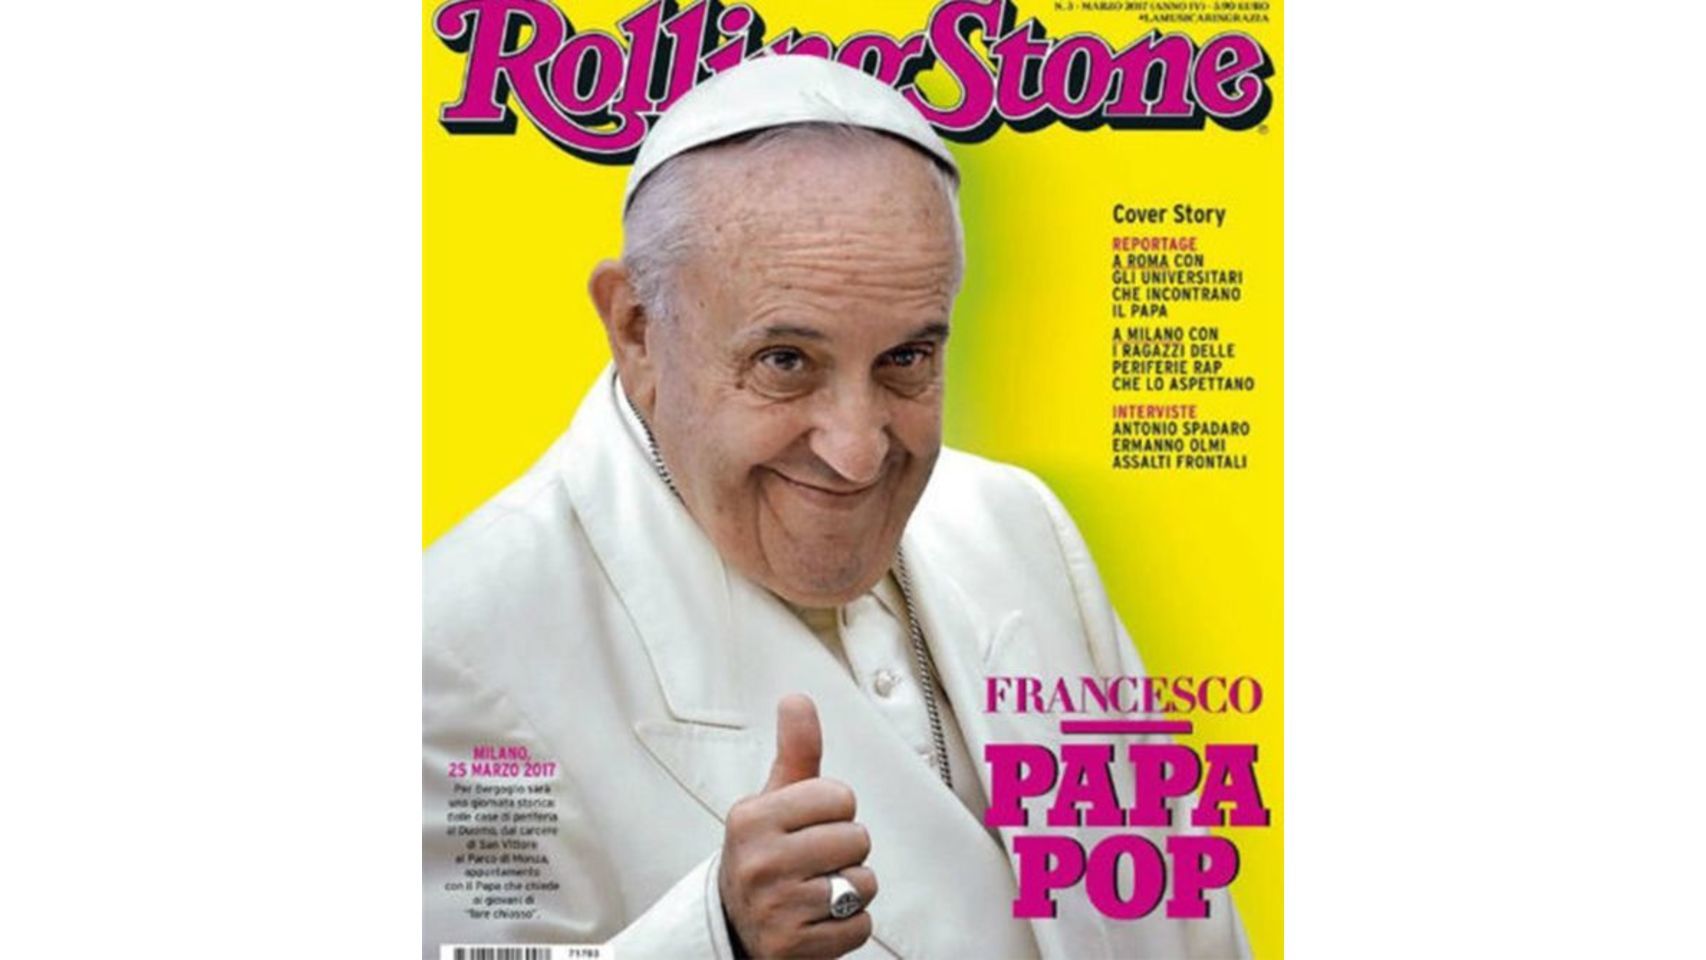 El Papa Francisco está siendo el Santo Pontífice con más seguidores tanto cristianos como ateos. Su fama ha llegado incluso hasta la portada de la revista musical Rolling Stone.